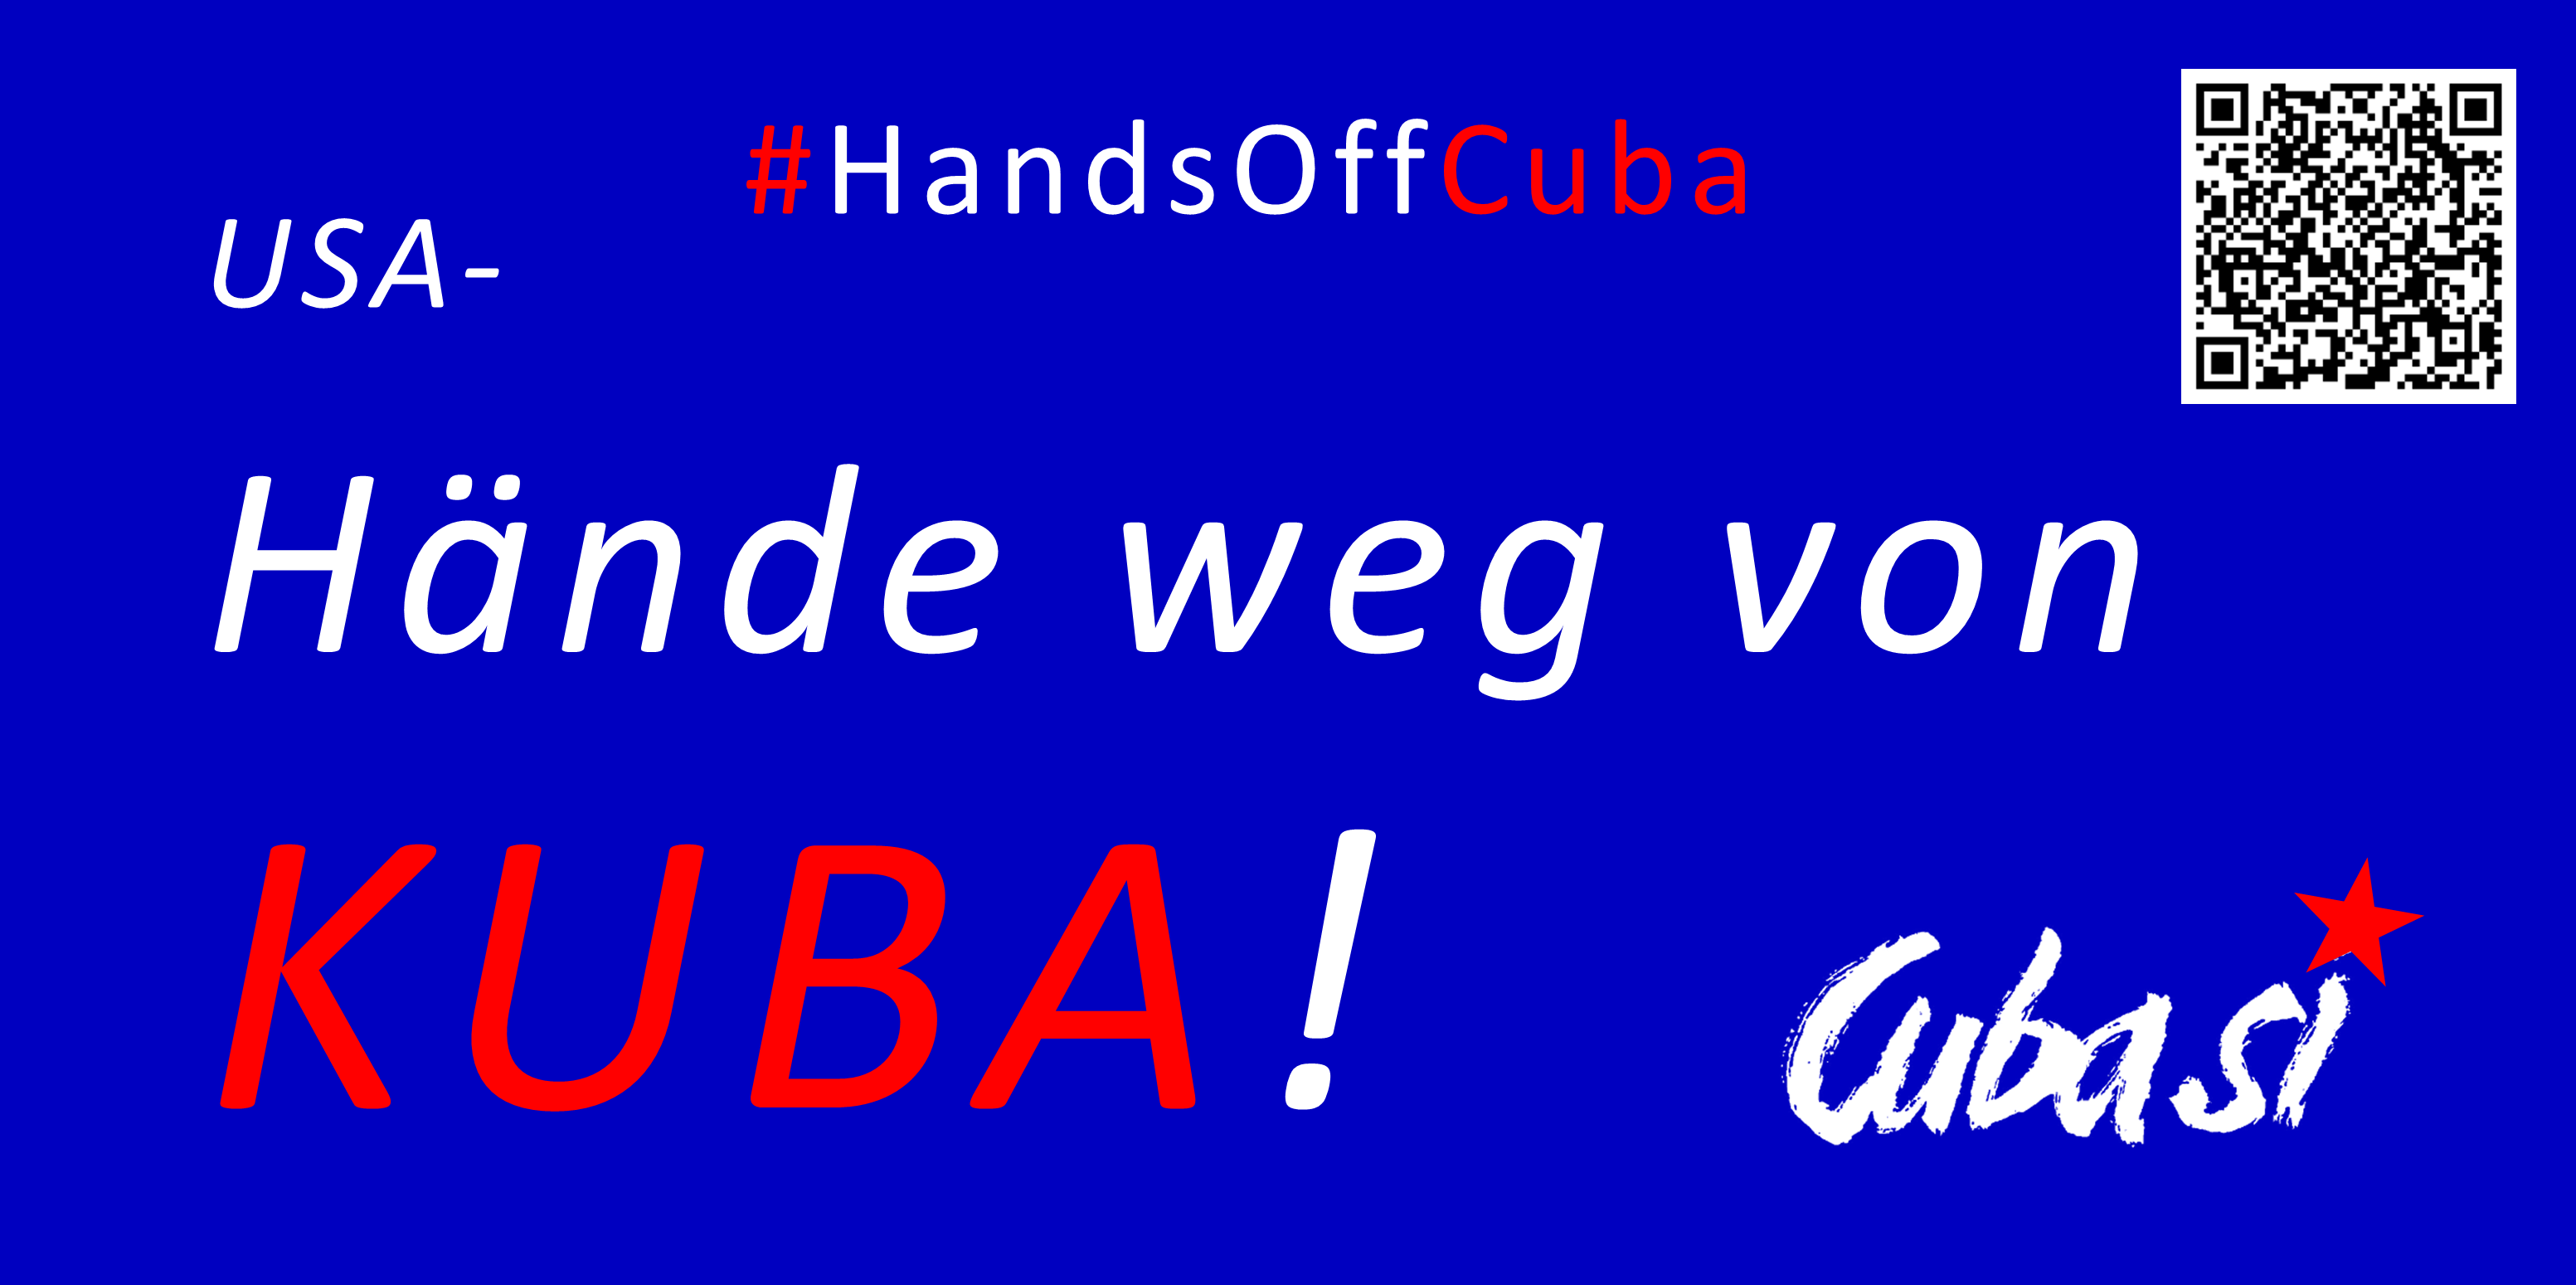 Gera: Hände weg  von Kuba